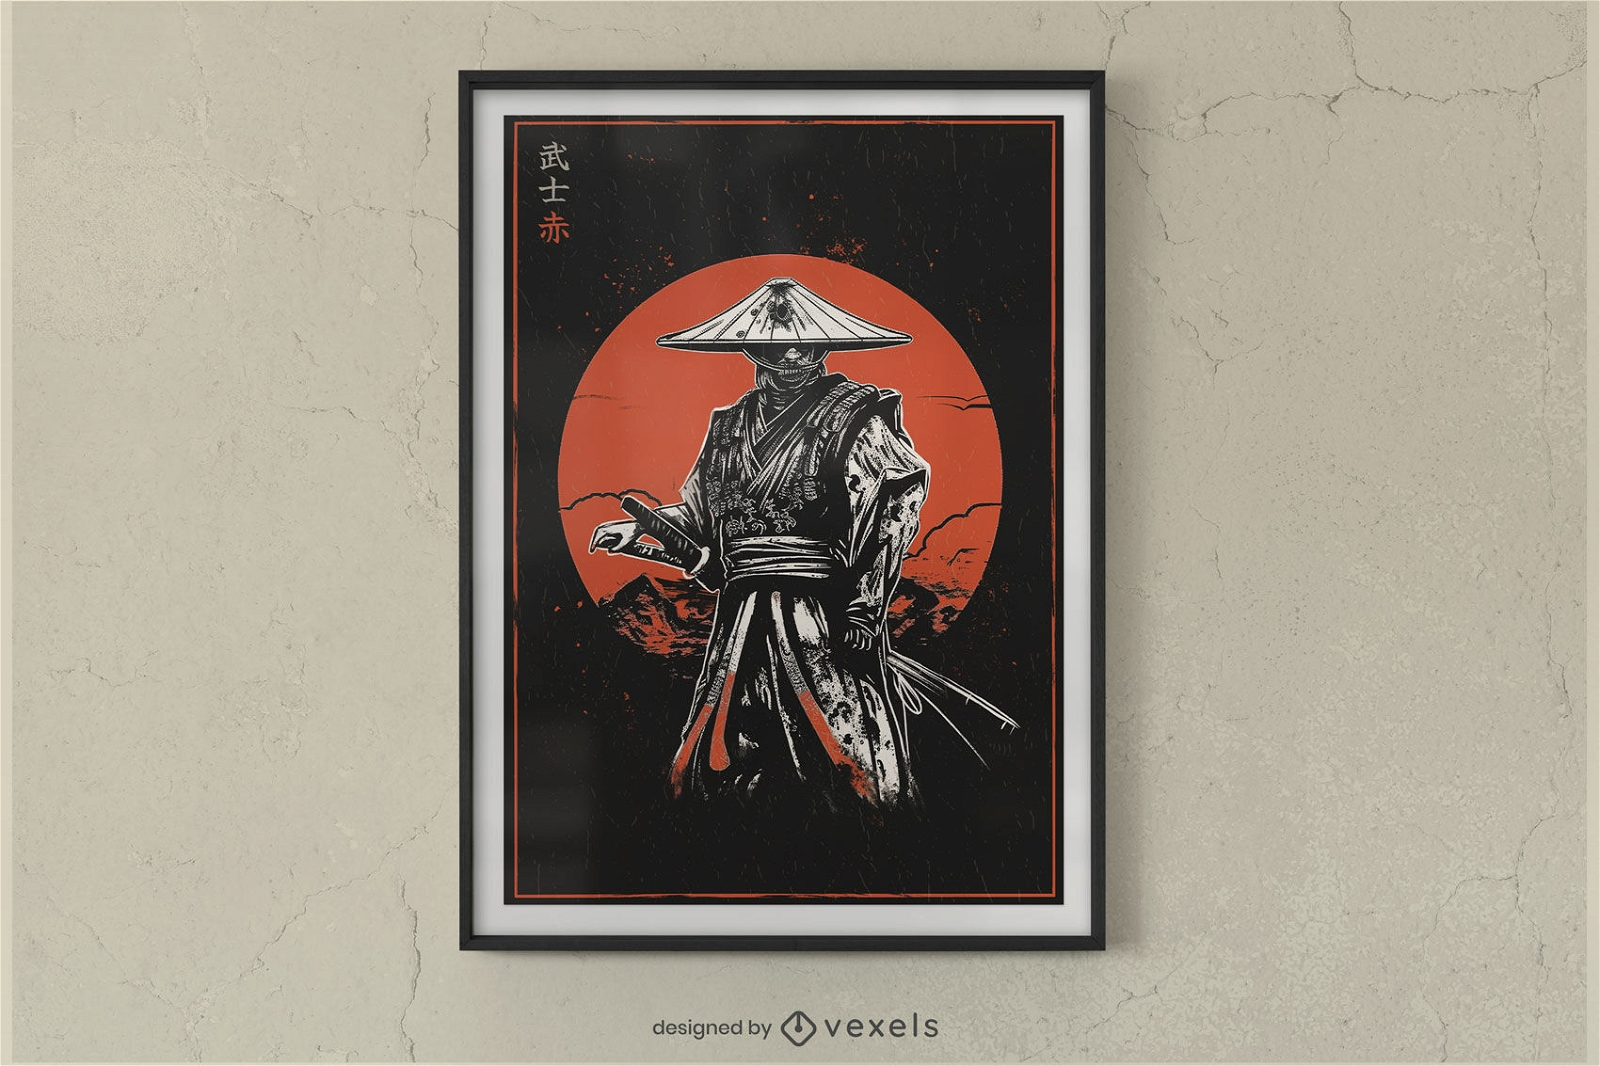 Samurai-Plakatdesign mit roter Sonne